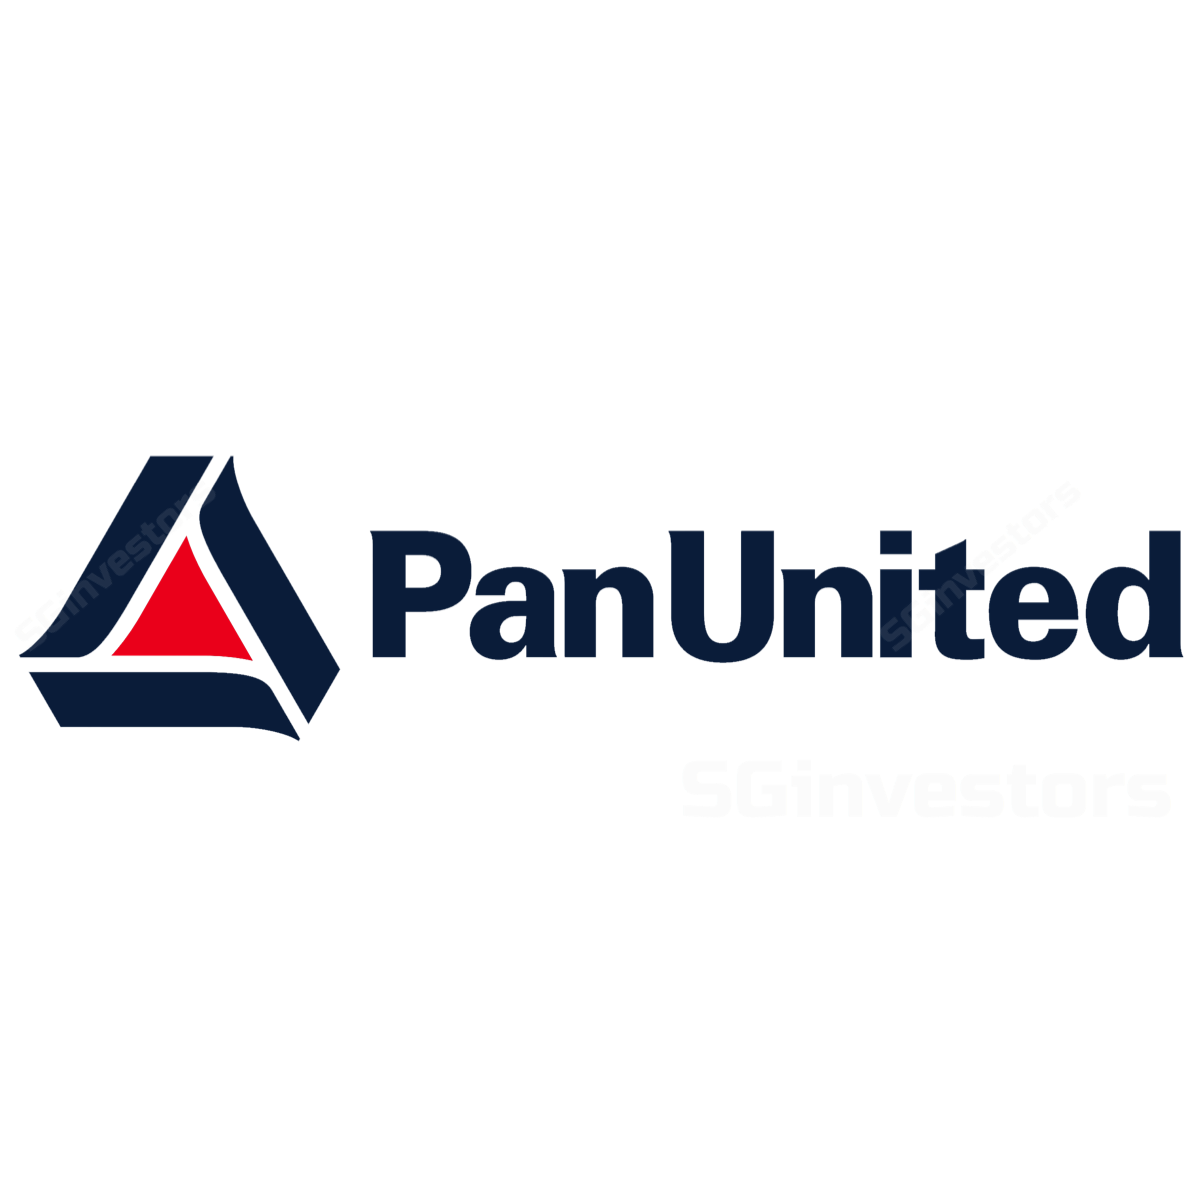 Pan-United Corporation - DBS Vickers 2017-08-14: Weak Outlook